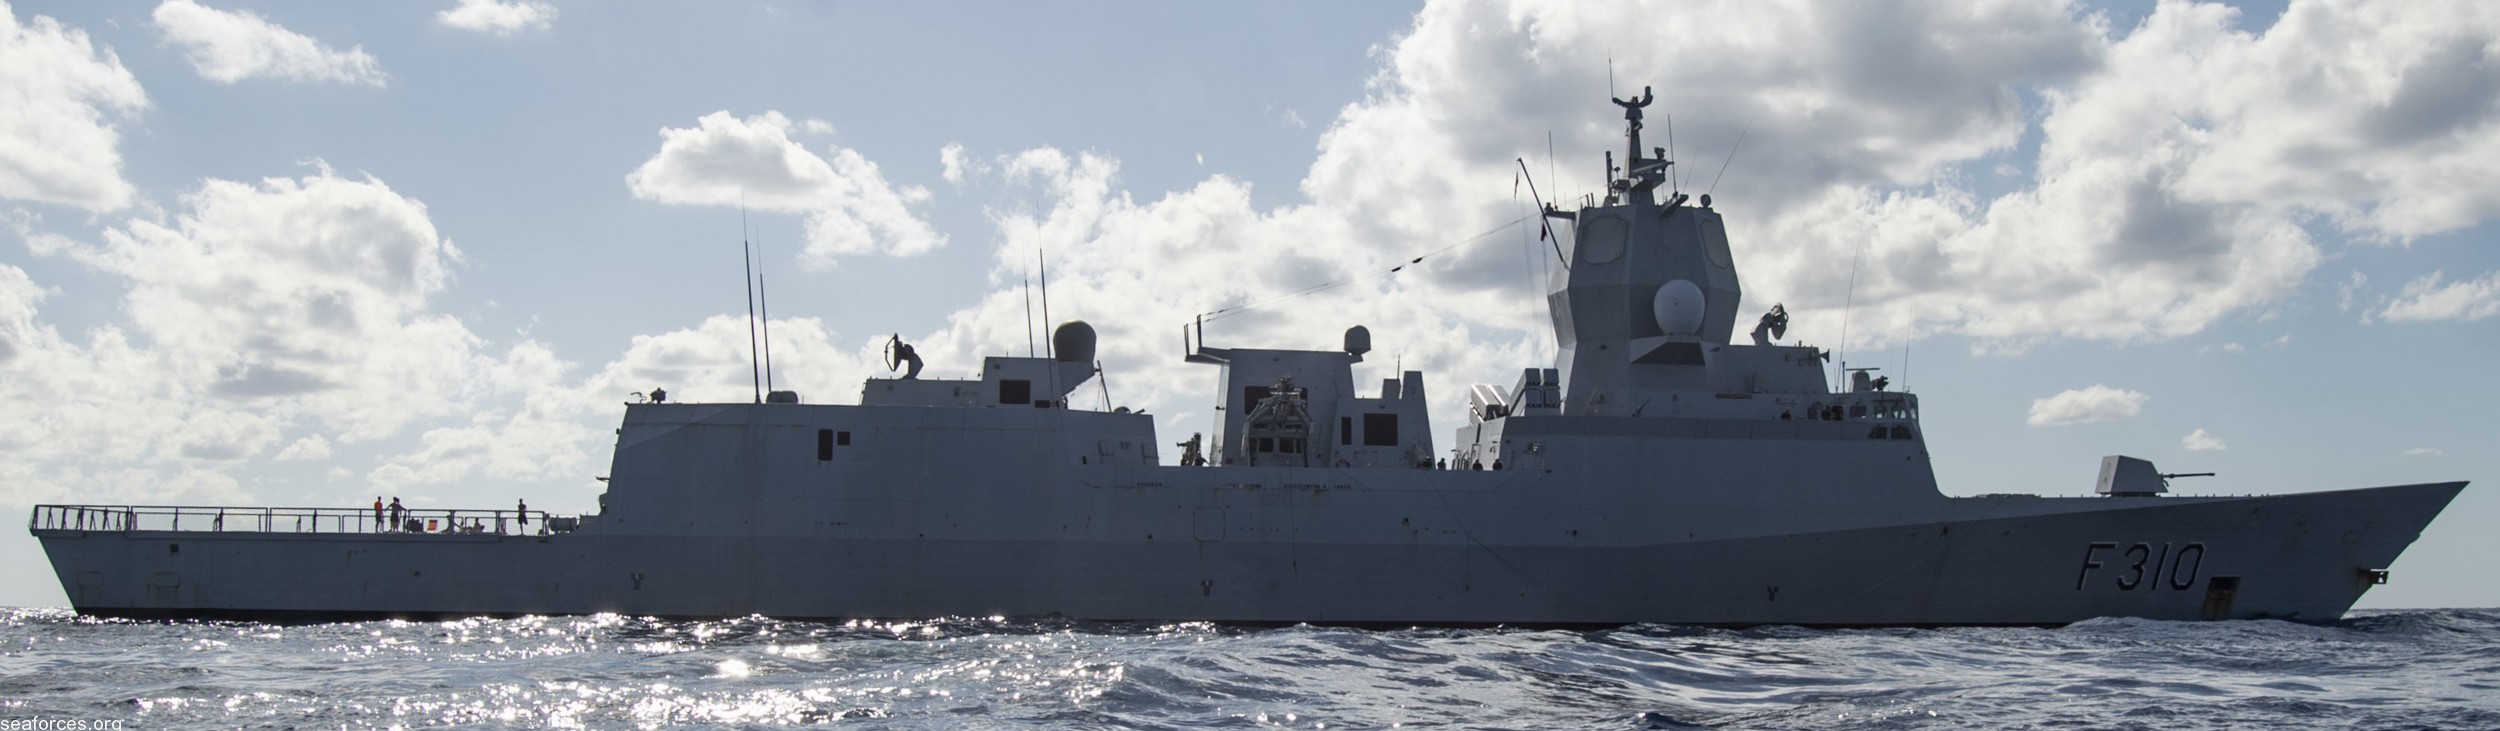 f-310 fridtjof nansen hnoms knm frigate royal norwegian navy sjoforsvaret 34